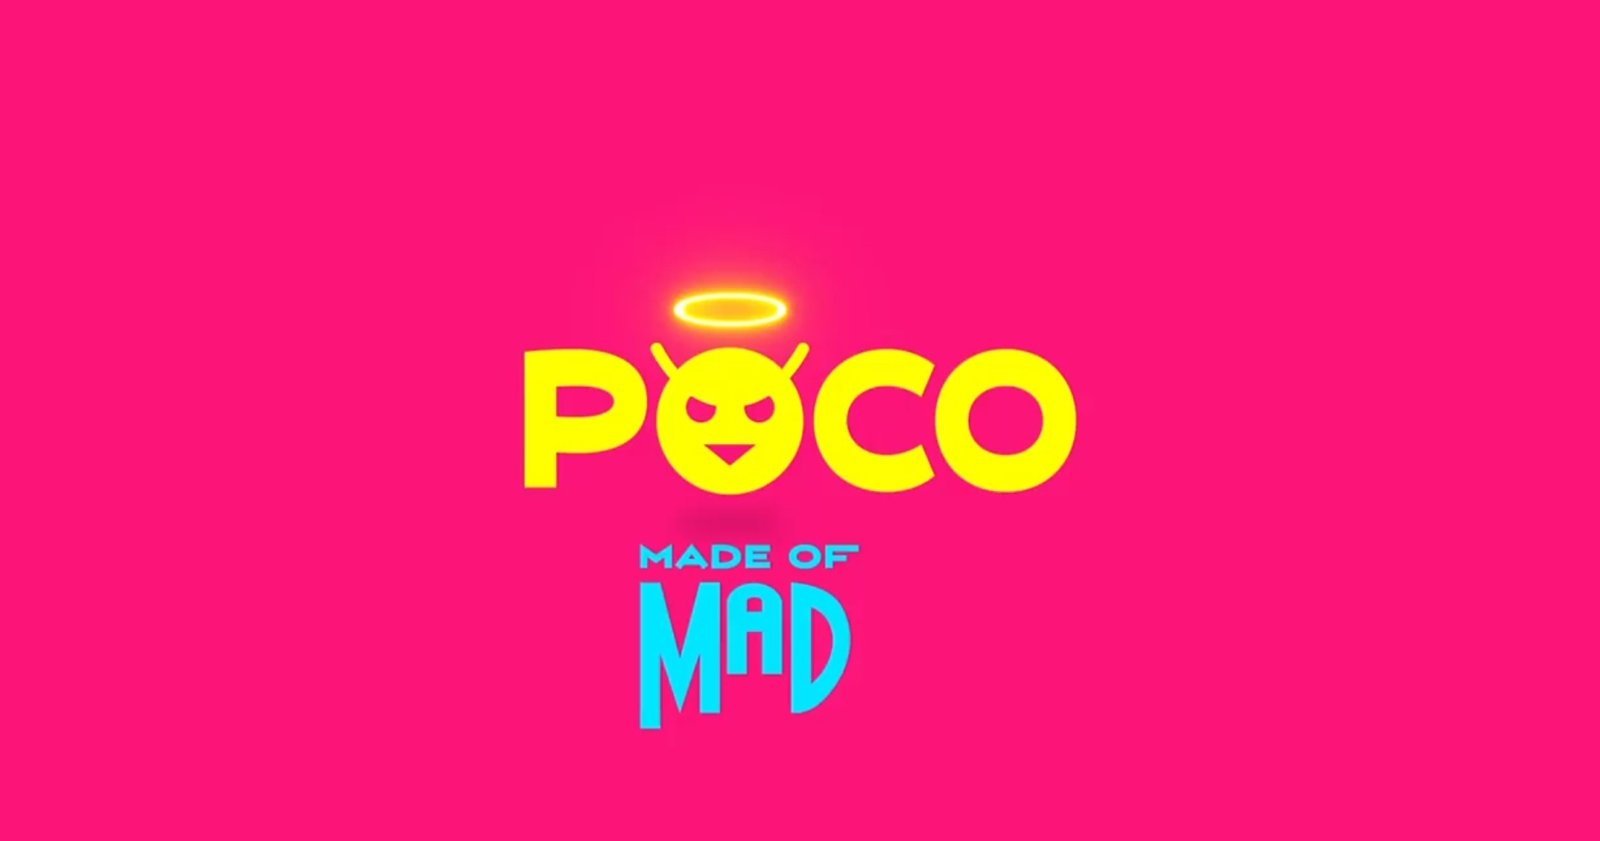 POCO cambia de imagen con nuevo logo y un emoji como mascota